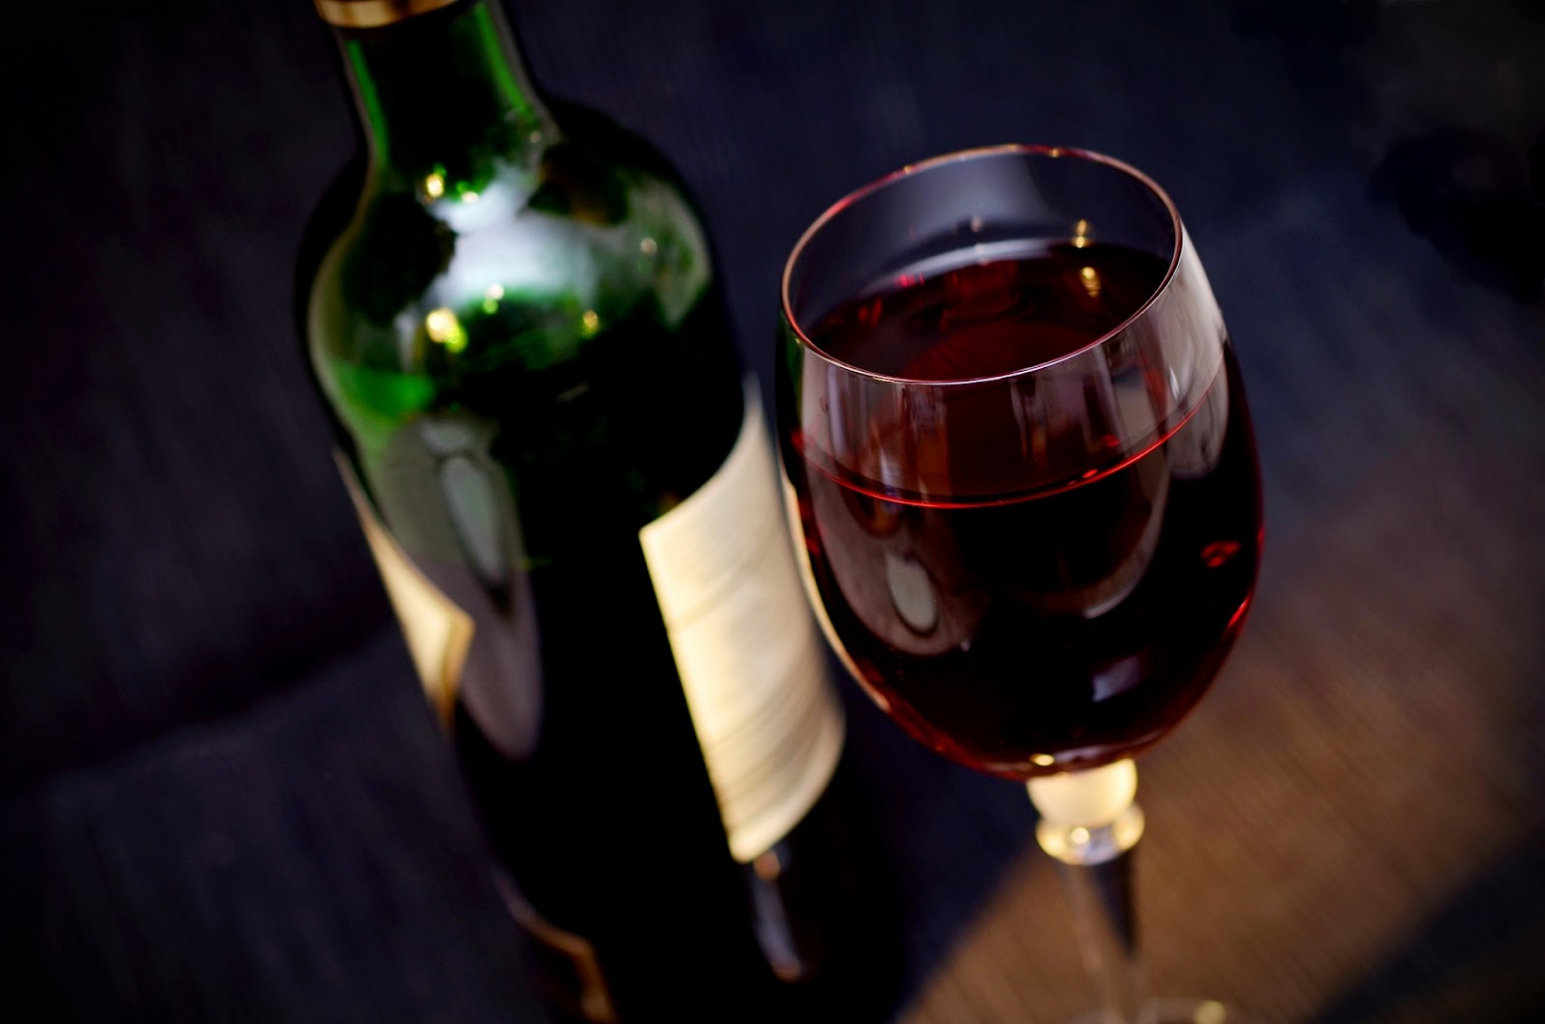 egy üveg vörösbor egy pohár vörösborral